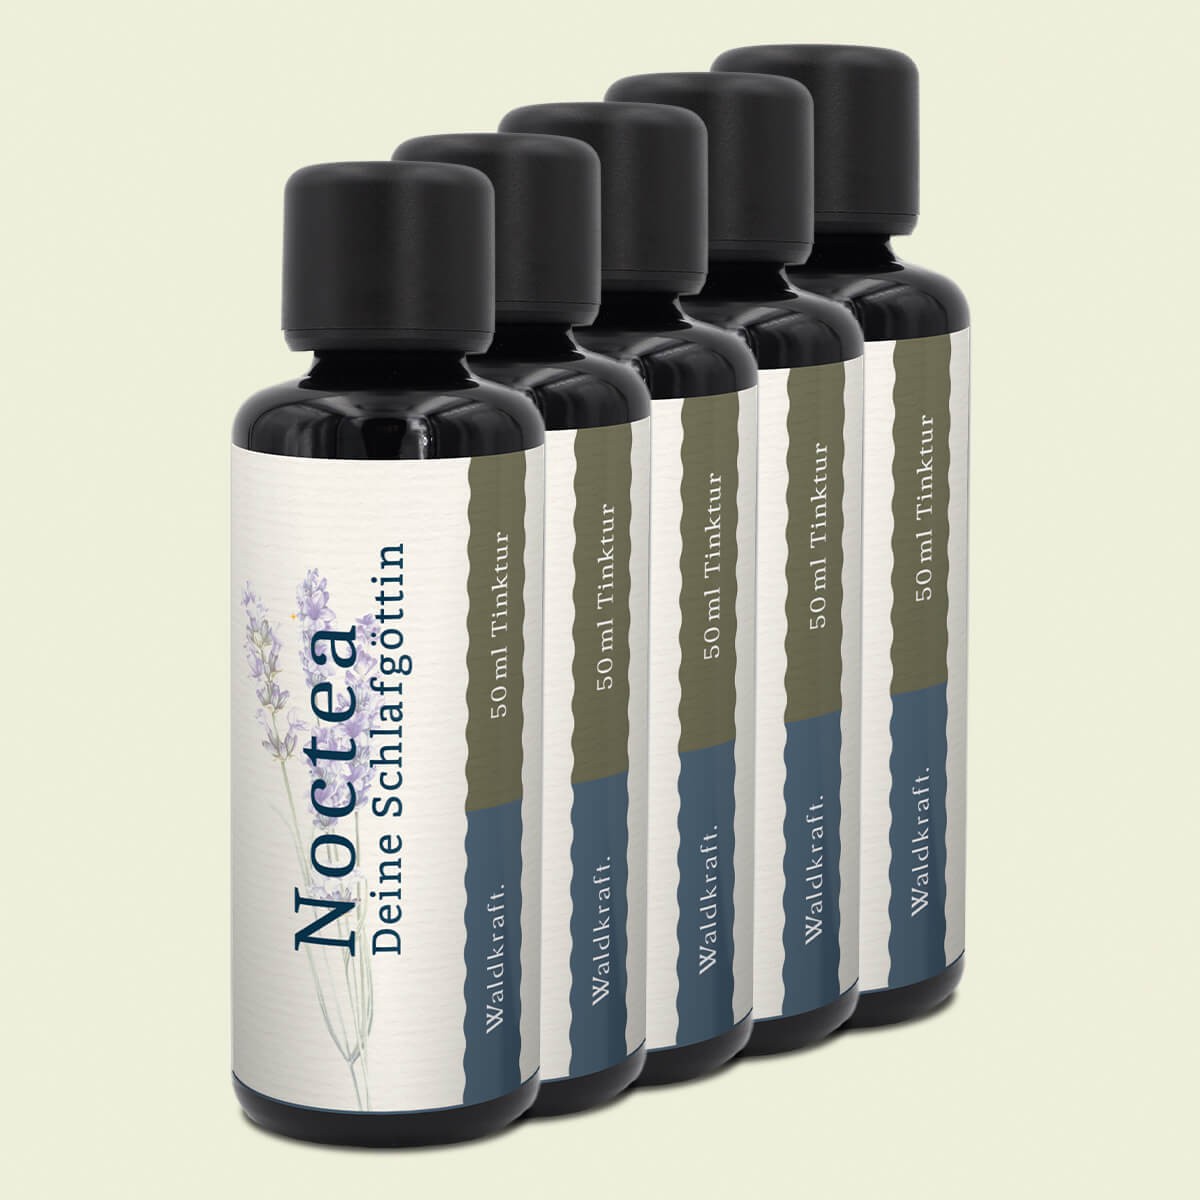 Noctea 5er Pack – Deine Schlafgöttin, Glycerin-Basis